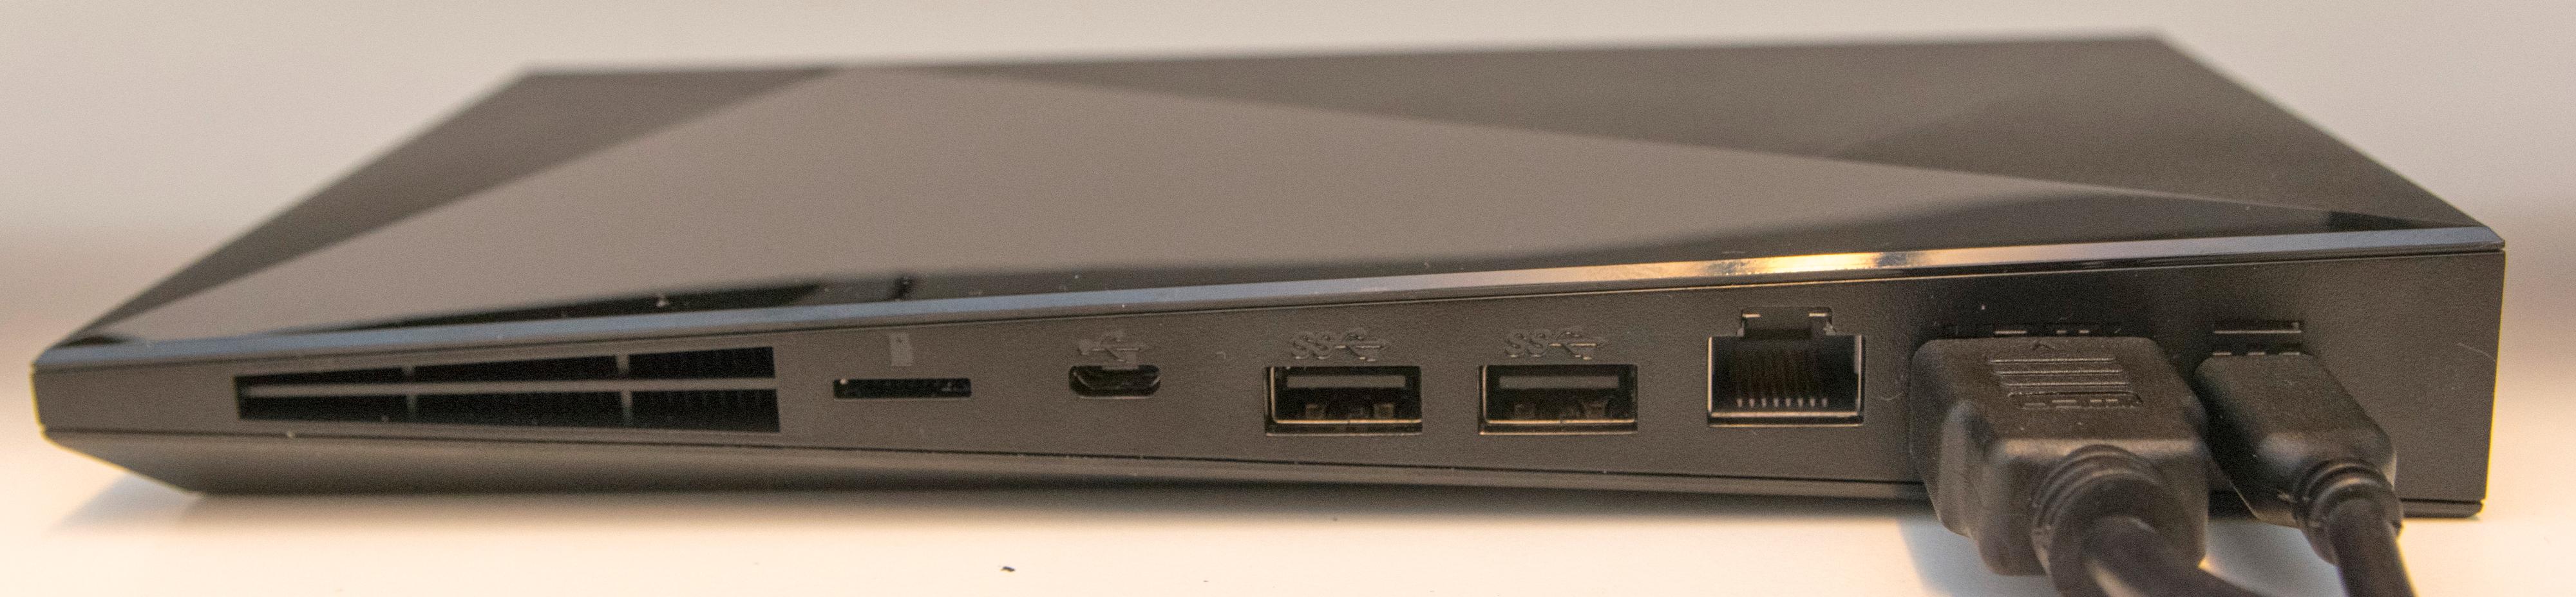 Innganger fra venstre mot høyre: microSD-kortplass, Micro USB, to USB 3.0-porter, gigabit nettverk, HDMI og strøm. For en konsoll med ganske stor overflate er det rart at Nvidia har sløyfet dedikerte lydutganger. Foto: Finn Jarle Kvalheim, Tek.no